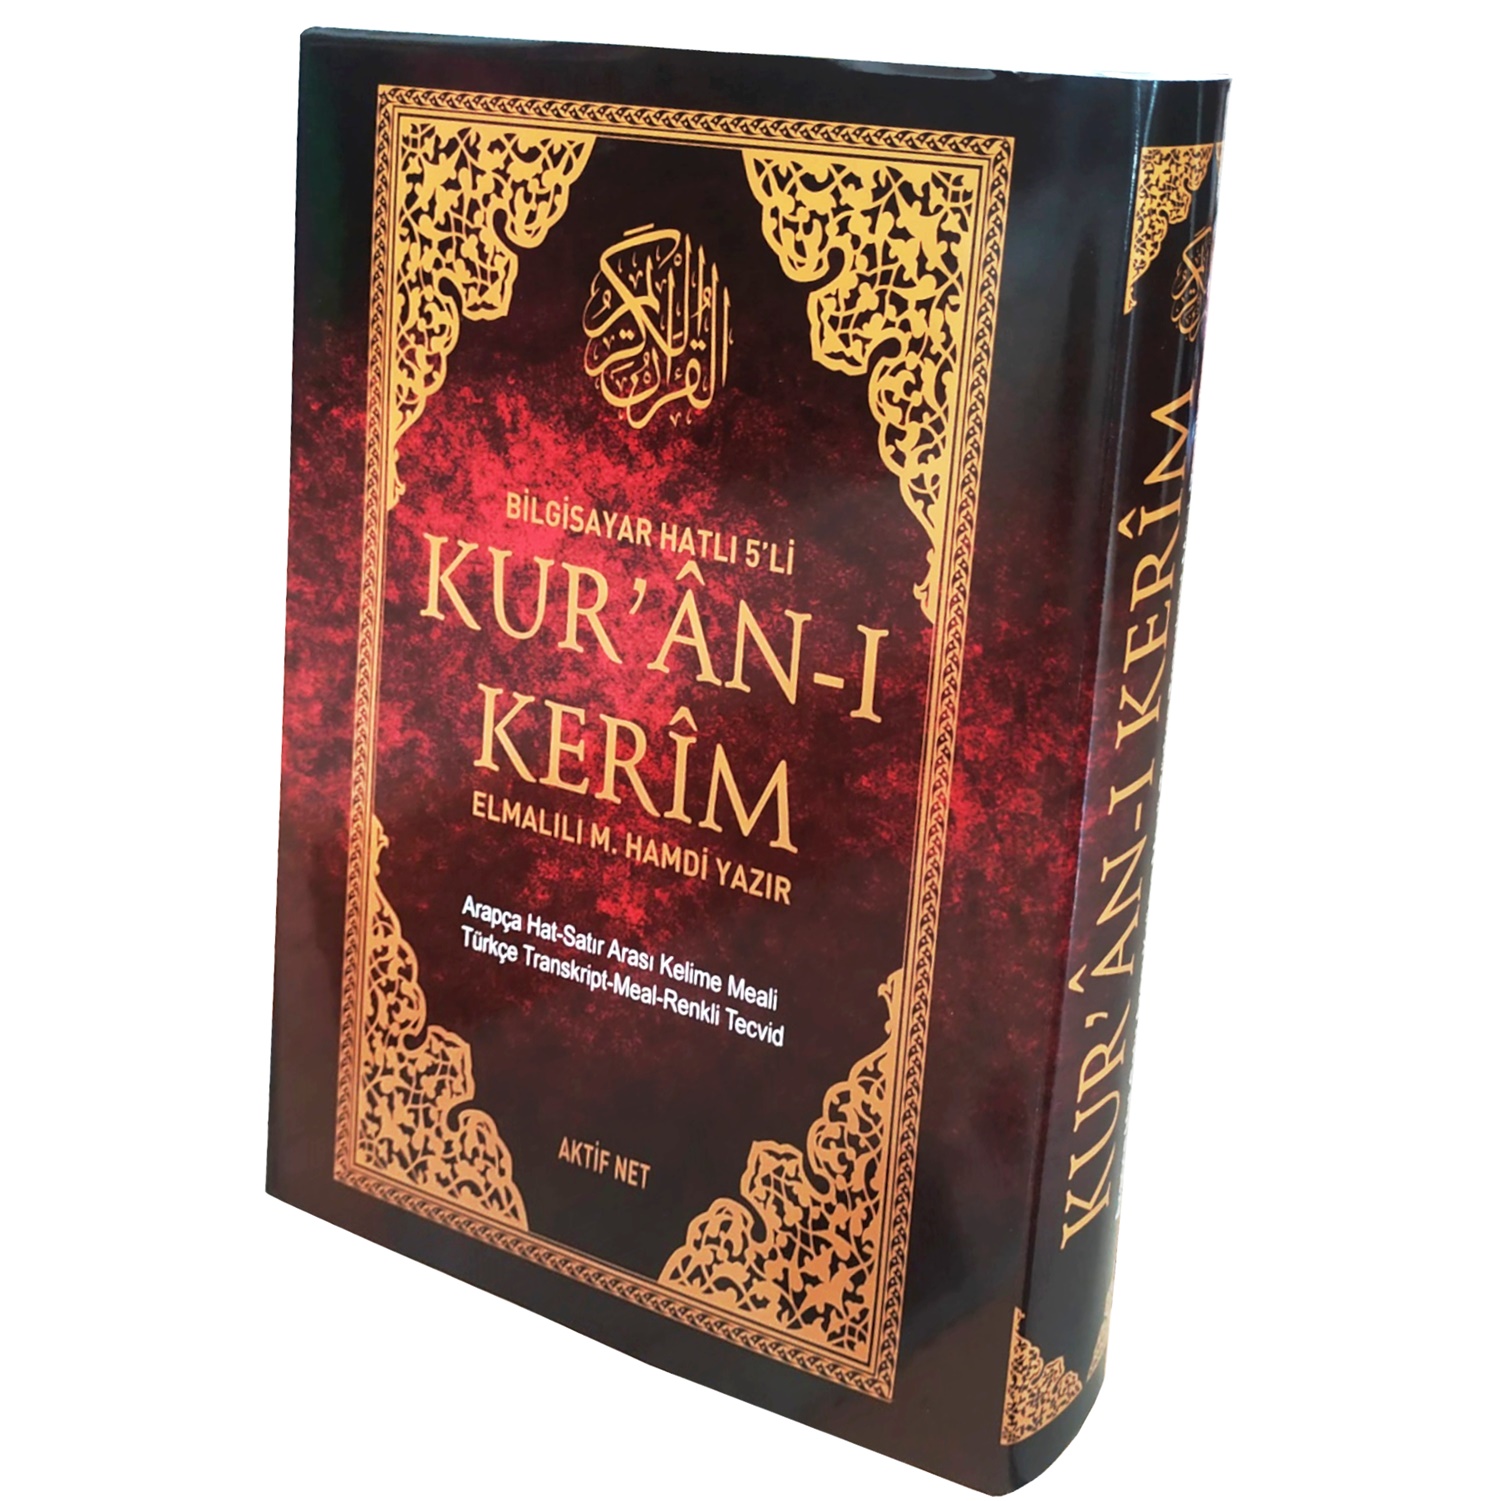 5 Özellikli Türkçe Okunuş ve Mealli Kuran-ı Kerim Aktif